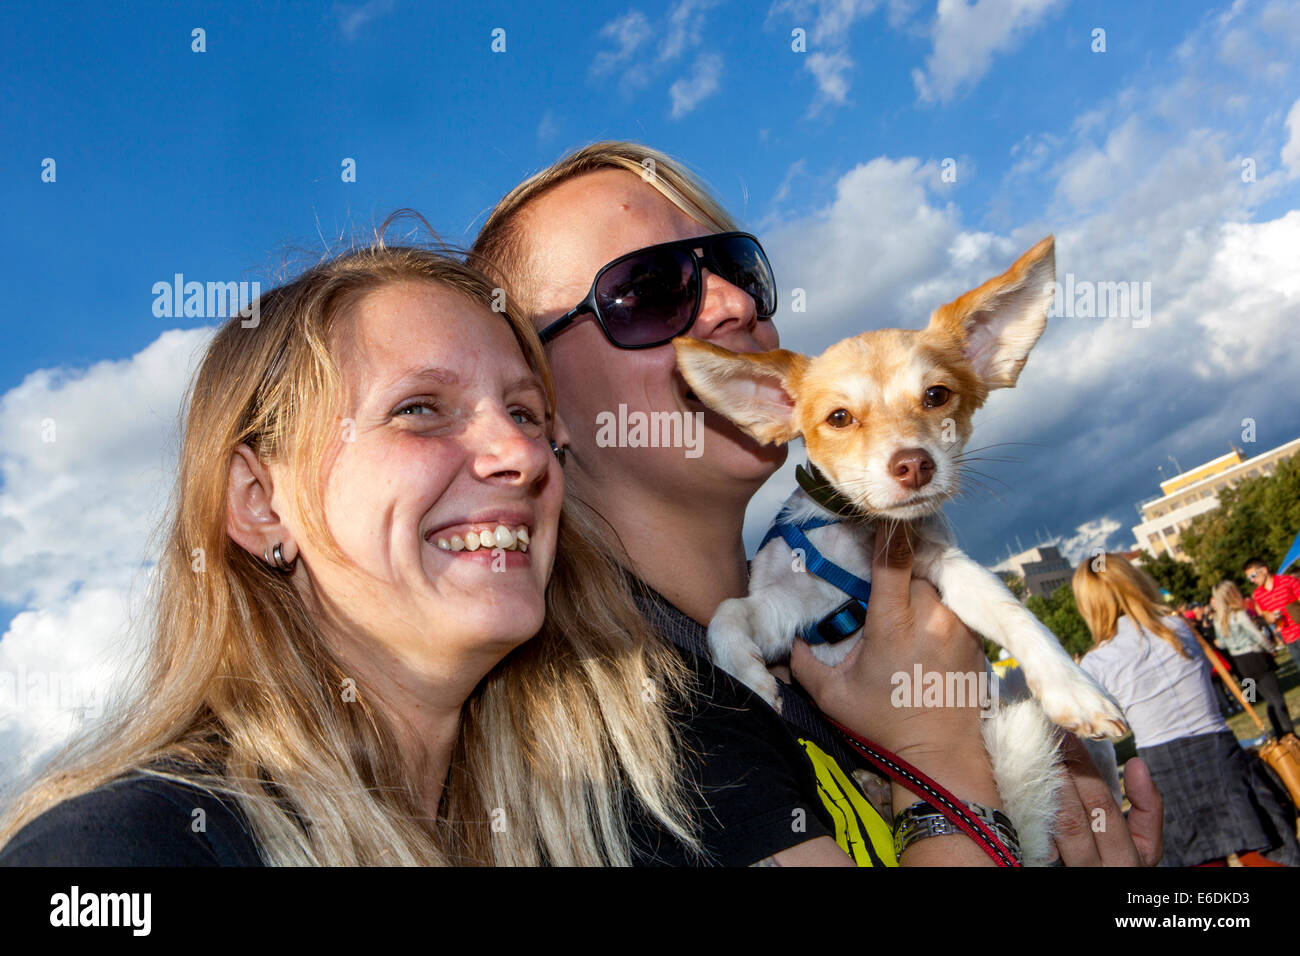 Coppia con il cane piccolo Praga, cane della Repubblica Ceca che guarda il cane da macchina fotografica grandi orecchie appuntite Foto Stock